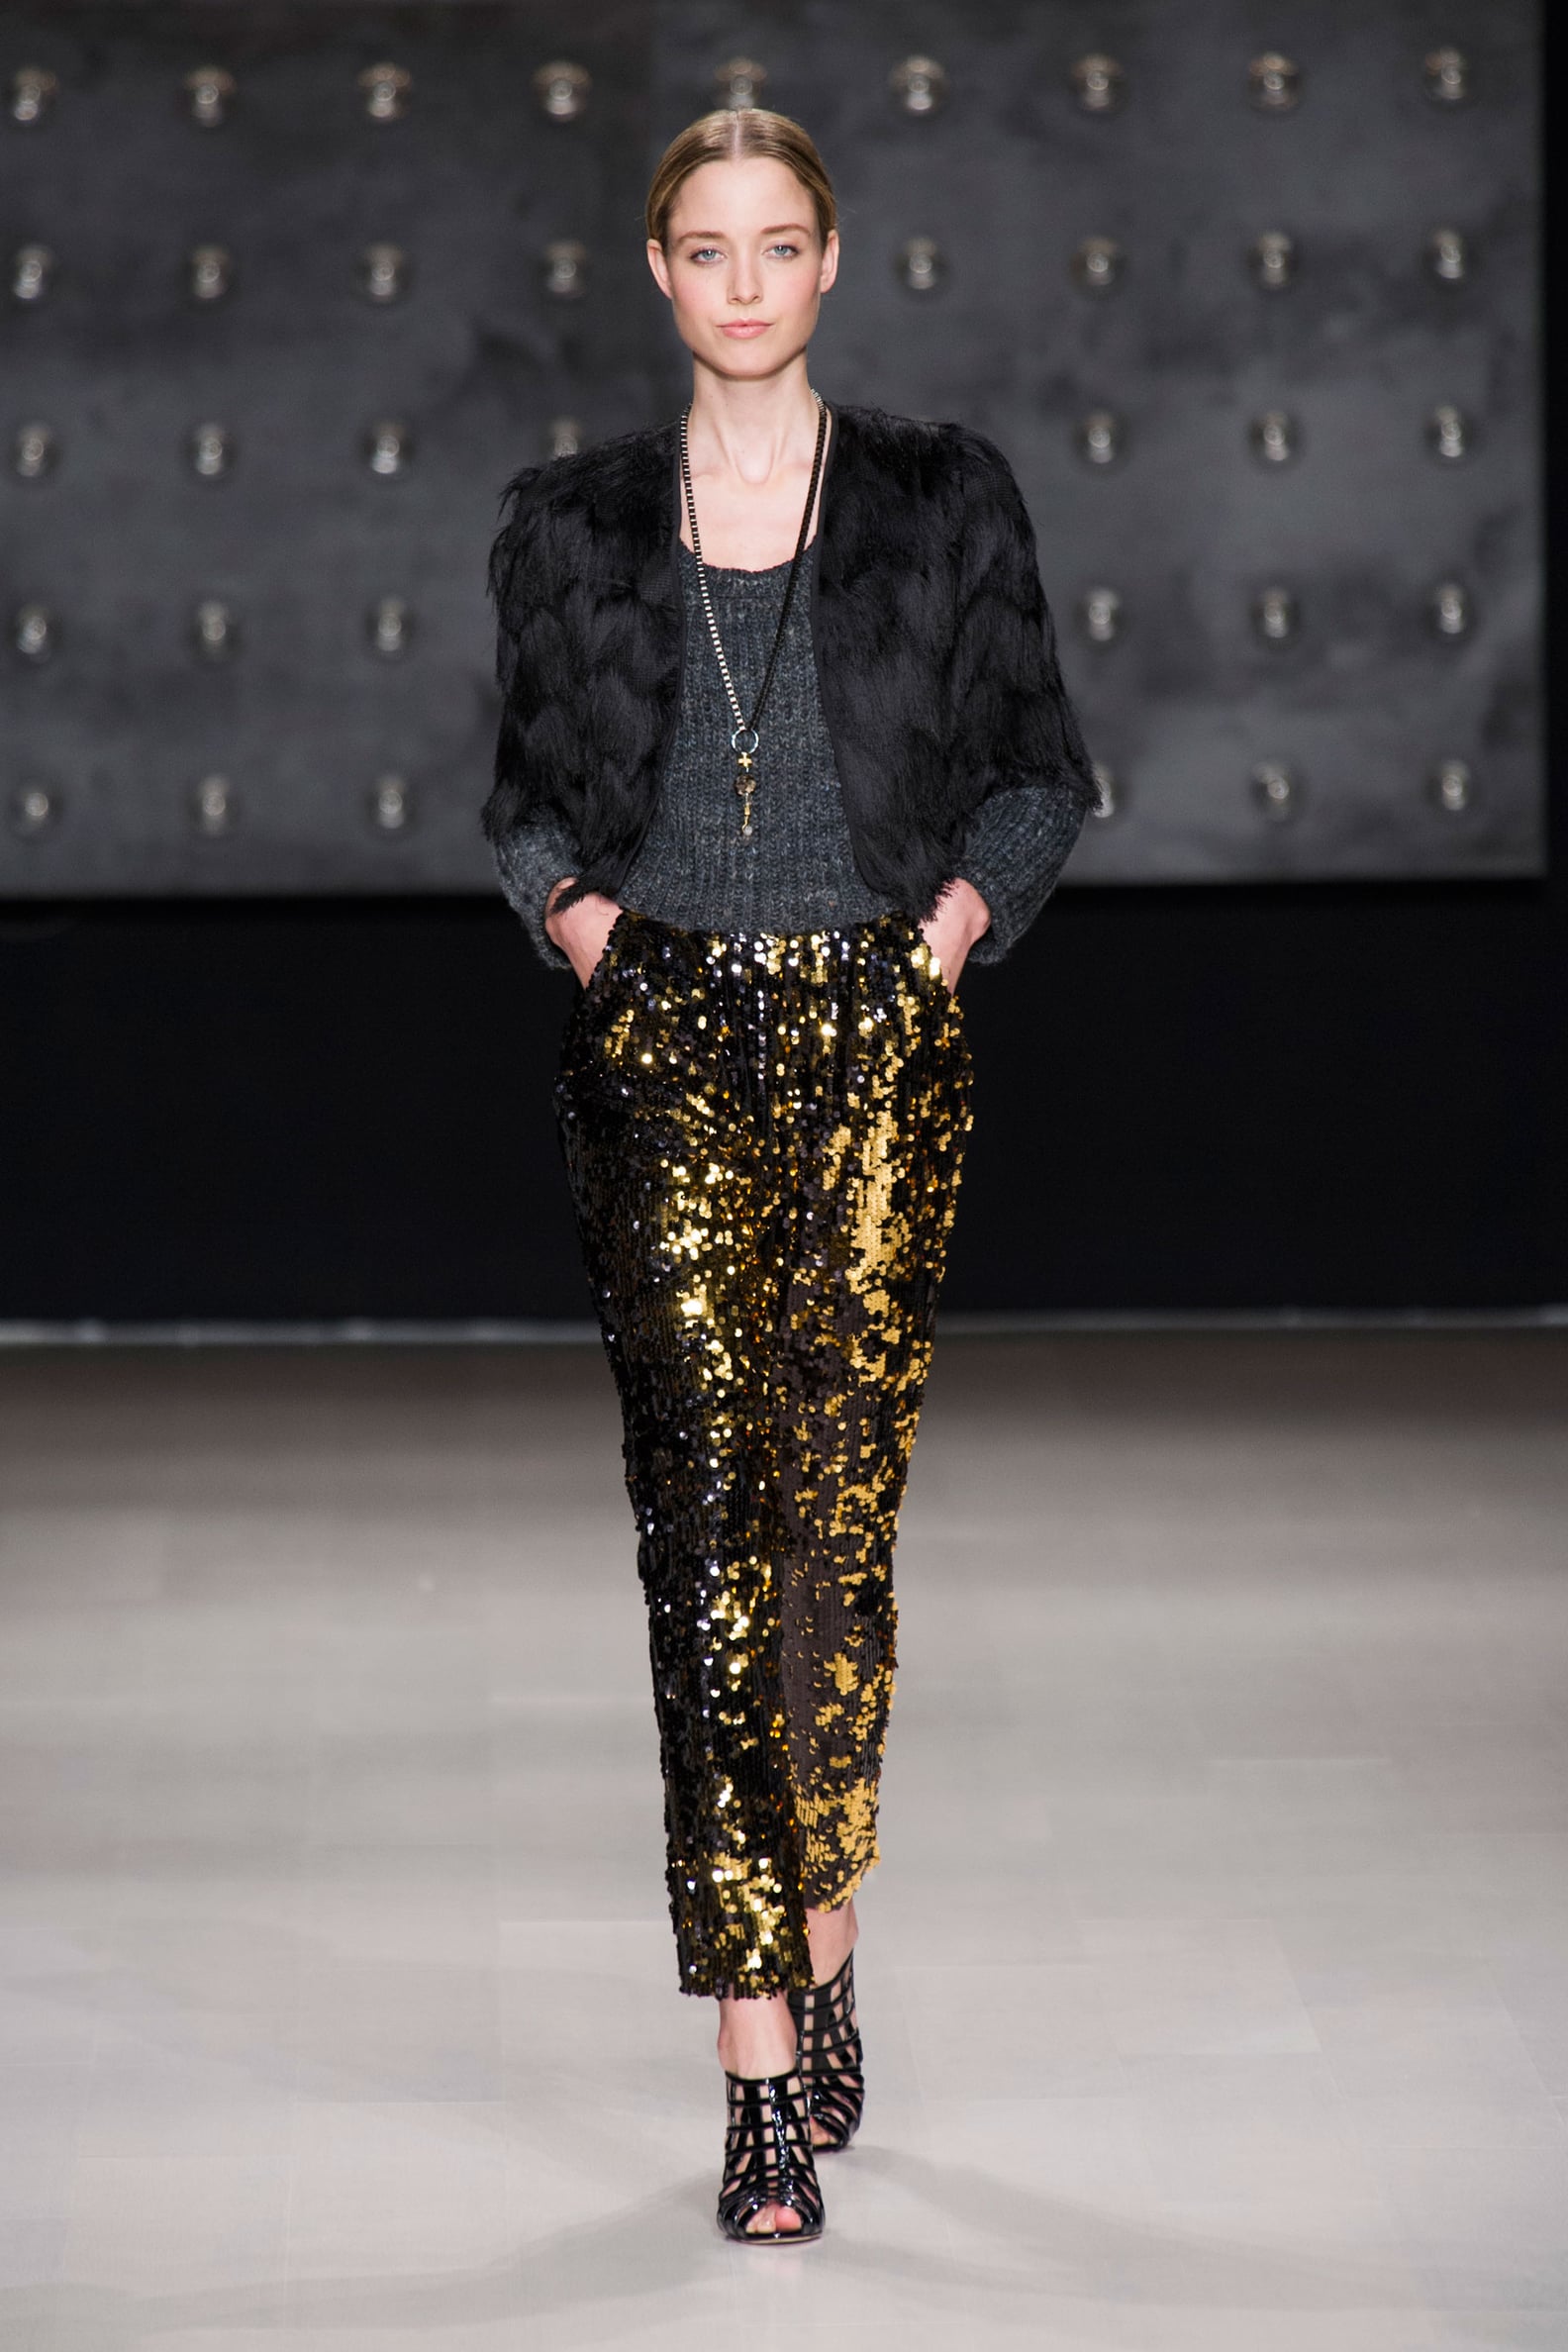 Milly Fall 2014 Runway Show | New York Fashion Week | POPSUGAR Fashion